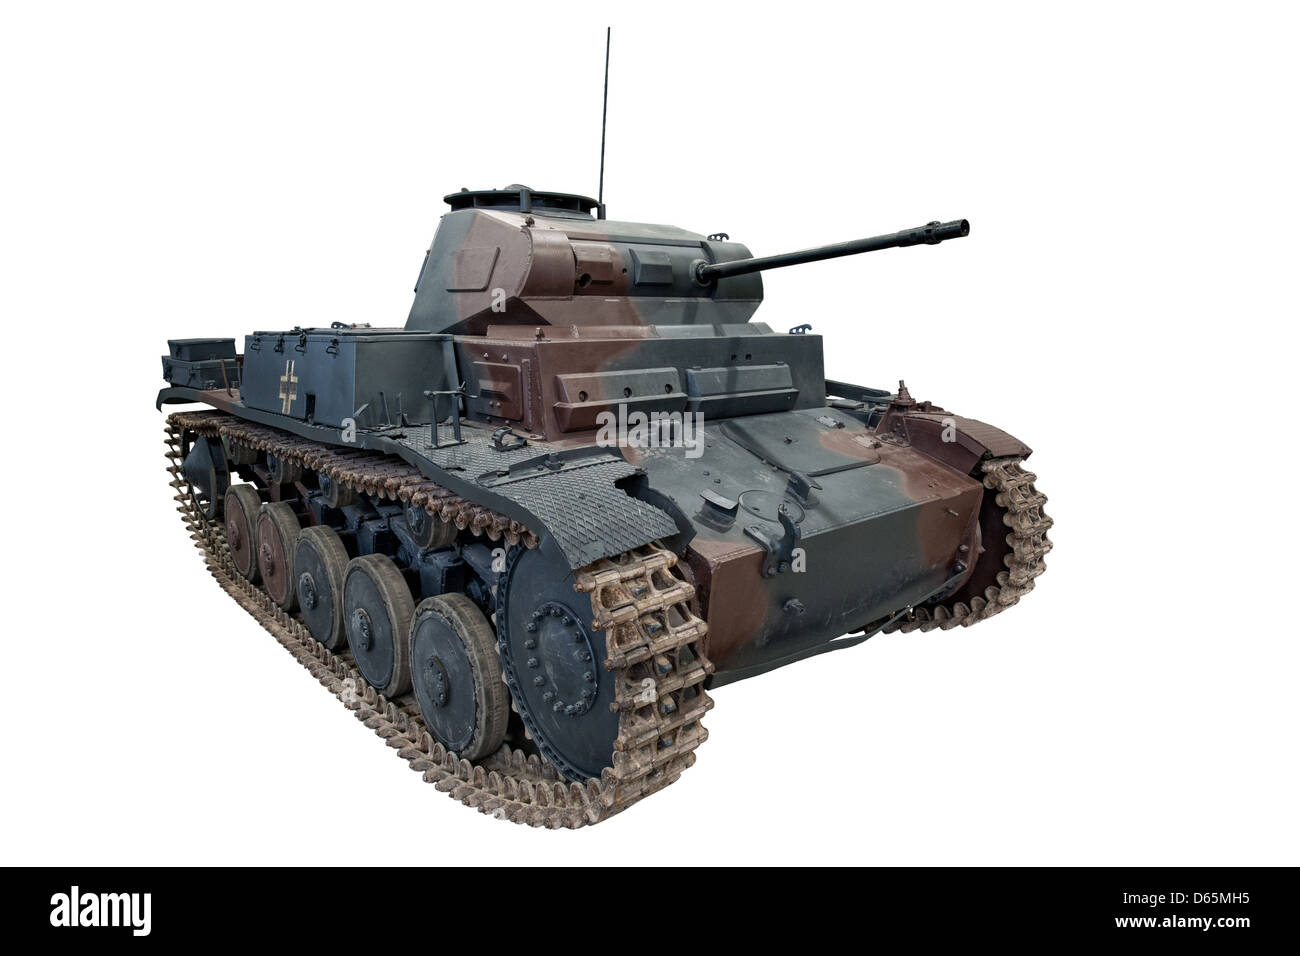 Une coupe d'un tank Panzer II, utilisés par les forces de l'Allemagne nazie pendant la SECONDE GUERRE MONDIALE Banque D'Images